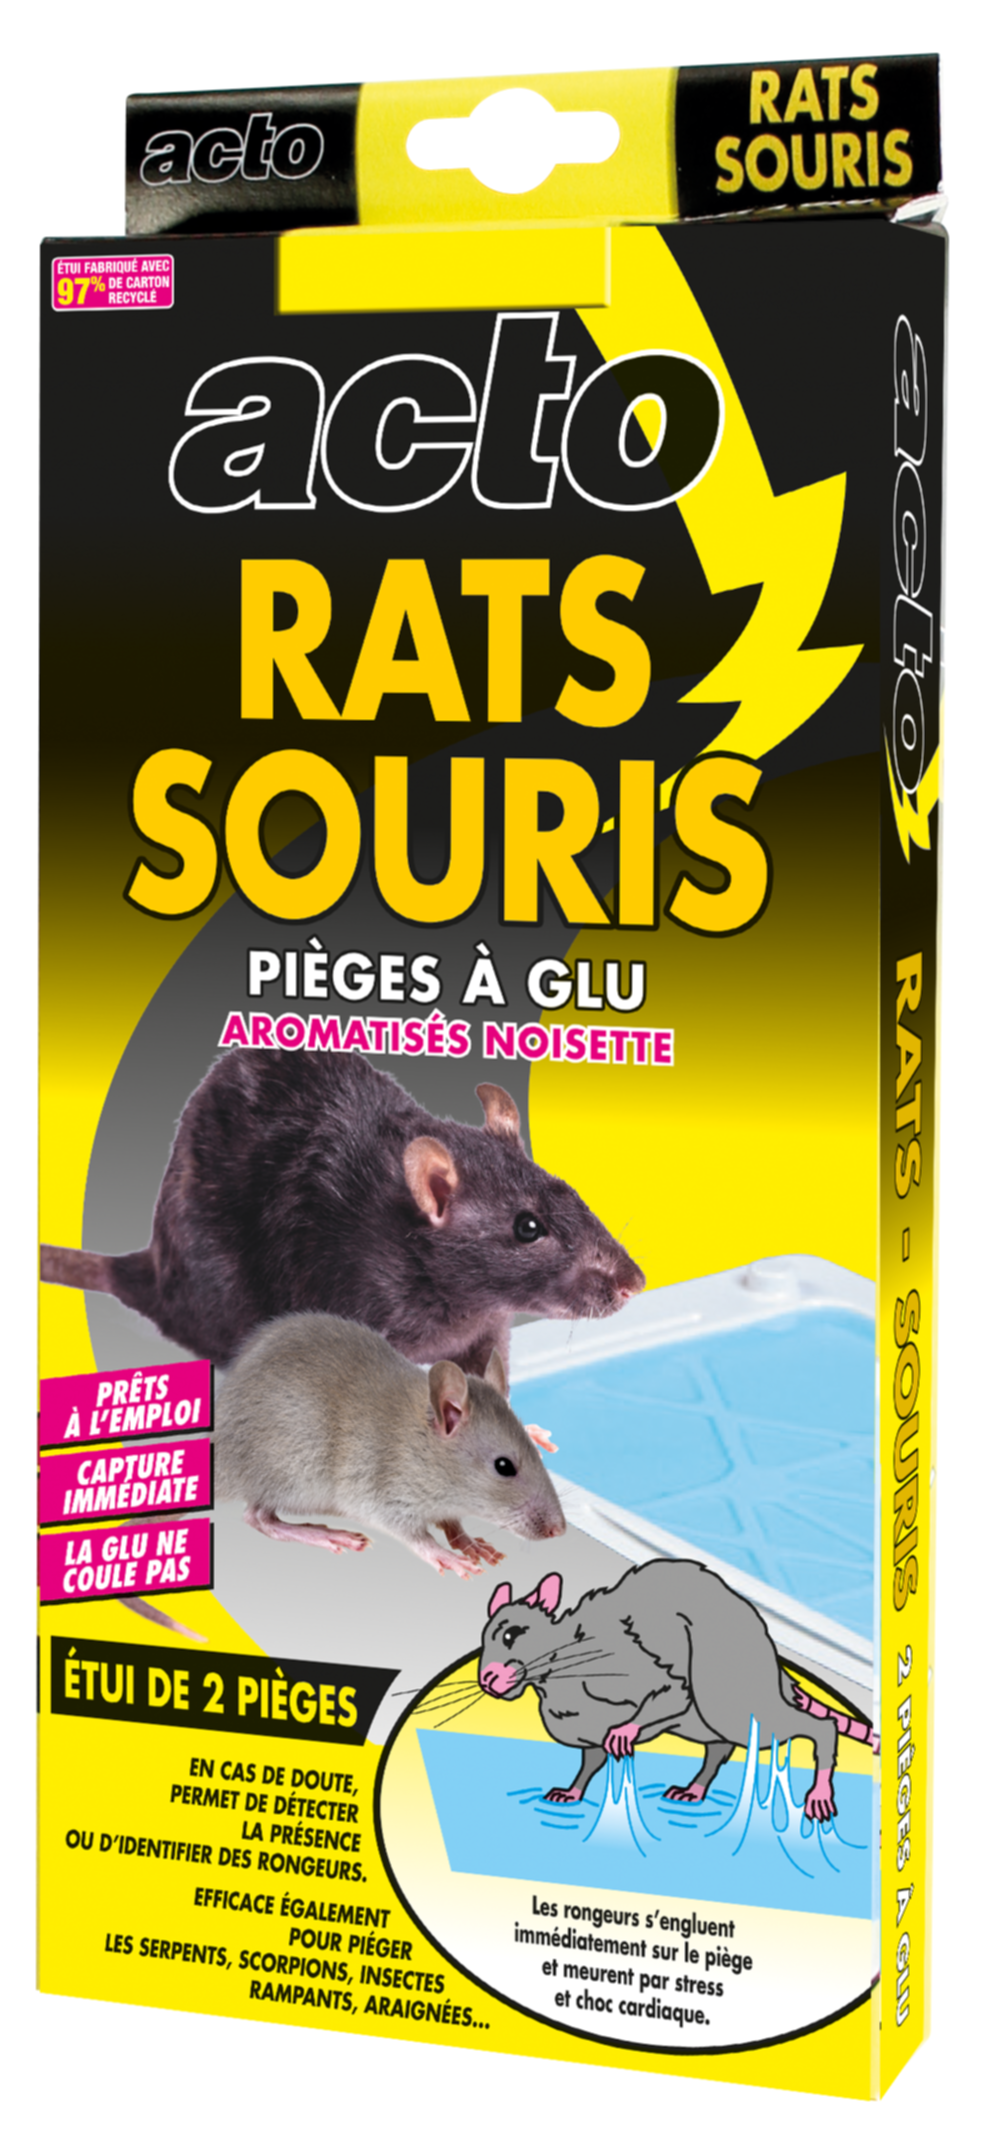 Piège à glu rats souris aromatisés noisette - ACTO